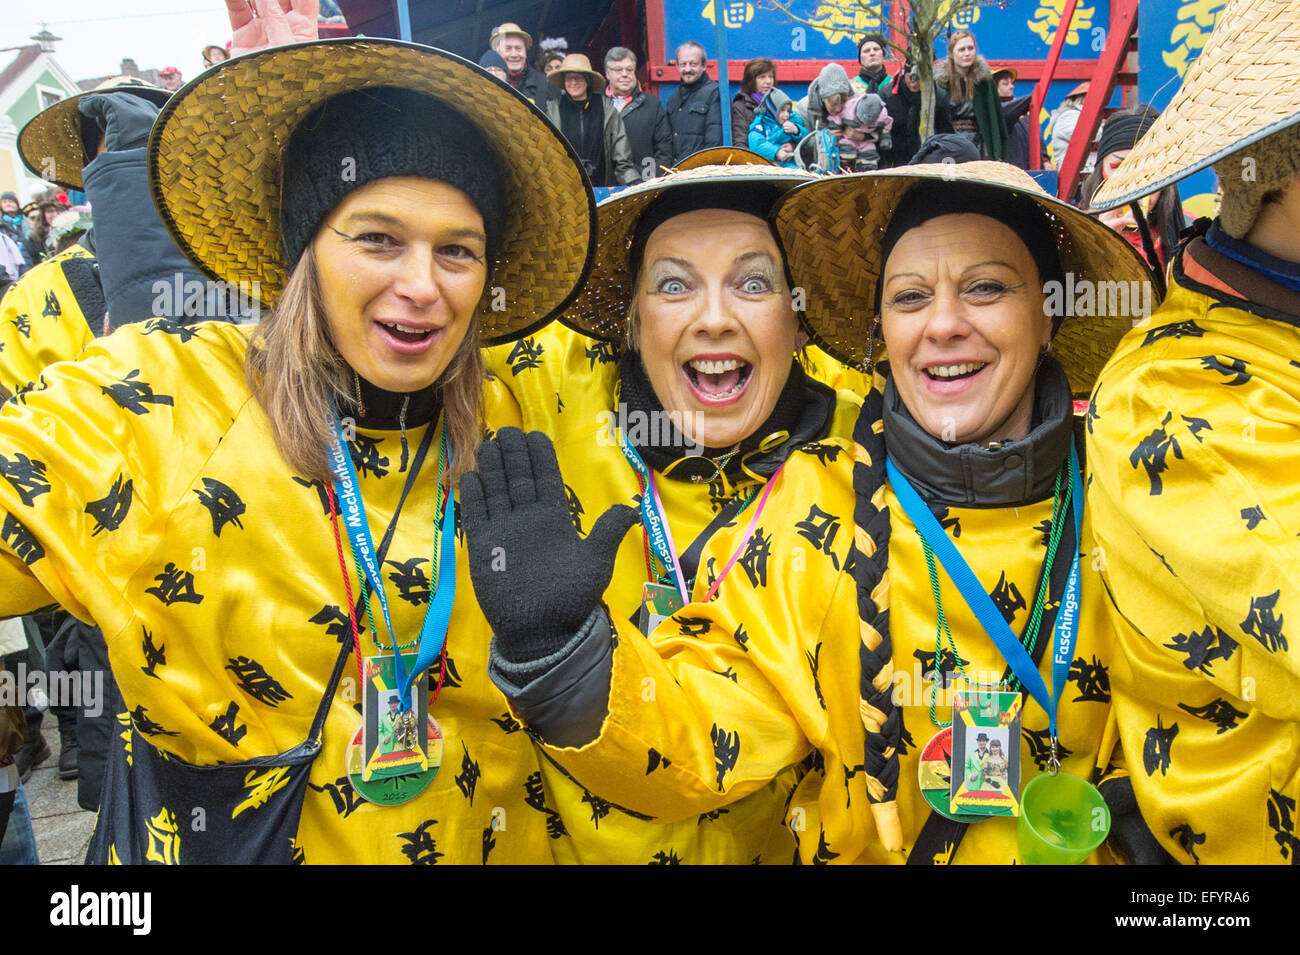 Zuschauer der traditionellen chinesischen Karneval Prozession tragen chinesische  Kostüme und feiern in der Innenstadt von Dietfurt, Bayern, Deutschland. Wie  jedes Jahr, die Karneval Narren verkleidet als Asiaten Verfahren durch die  Stadt sind.